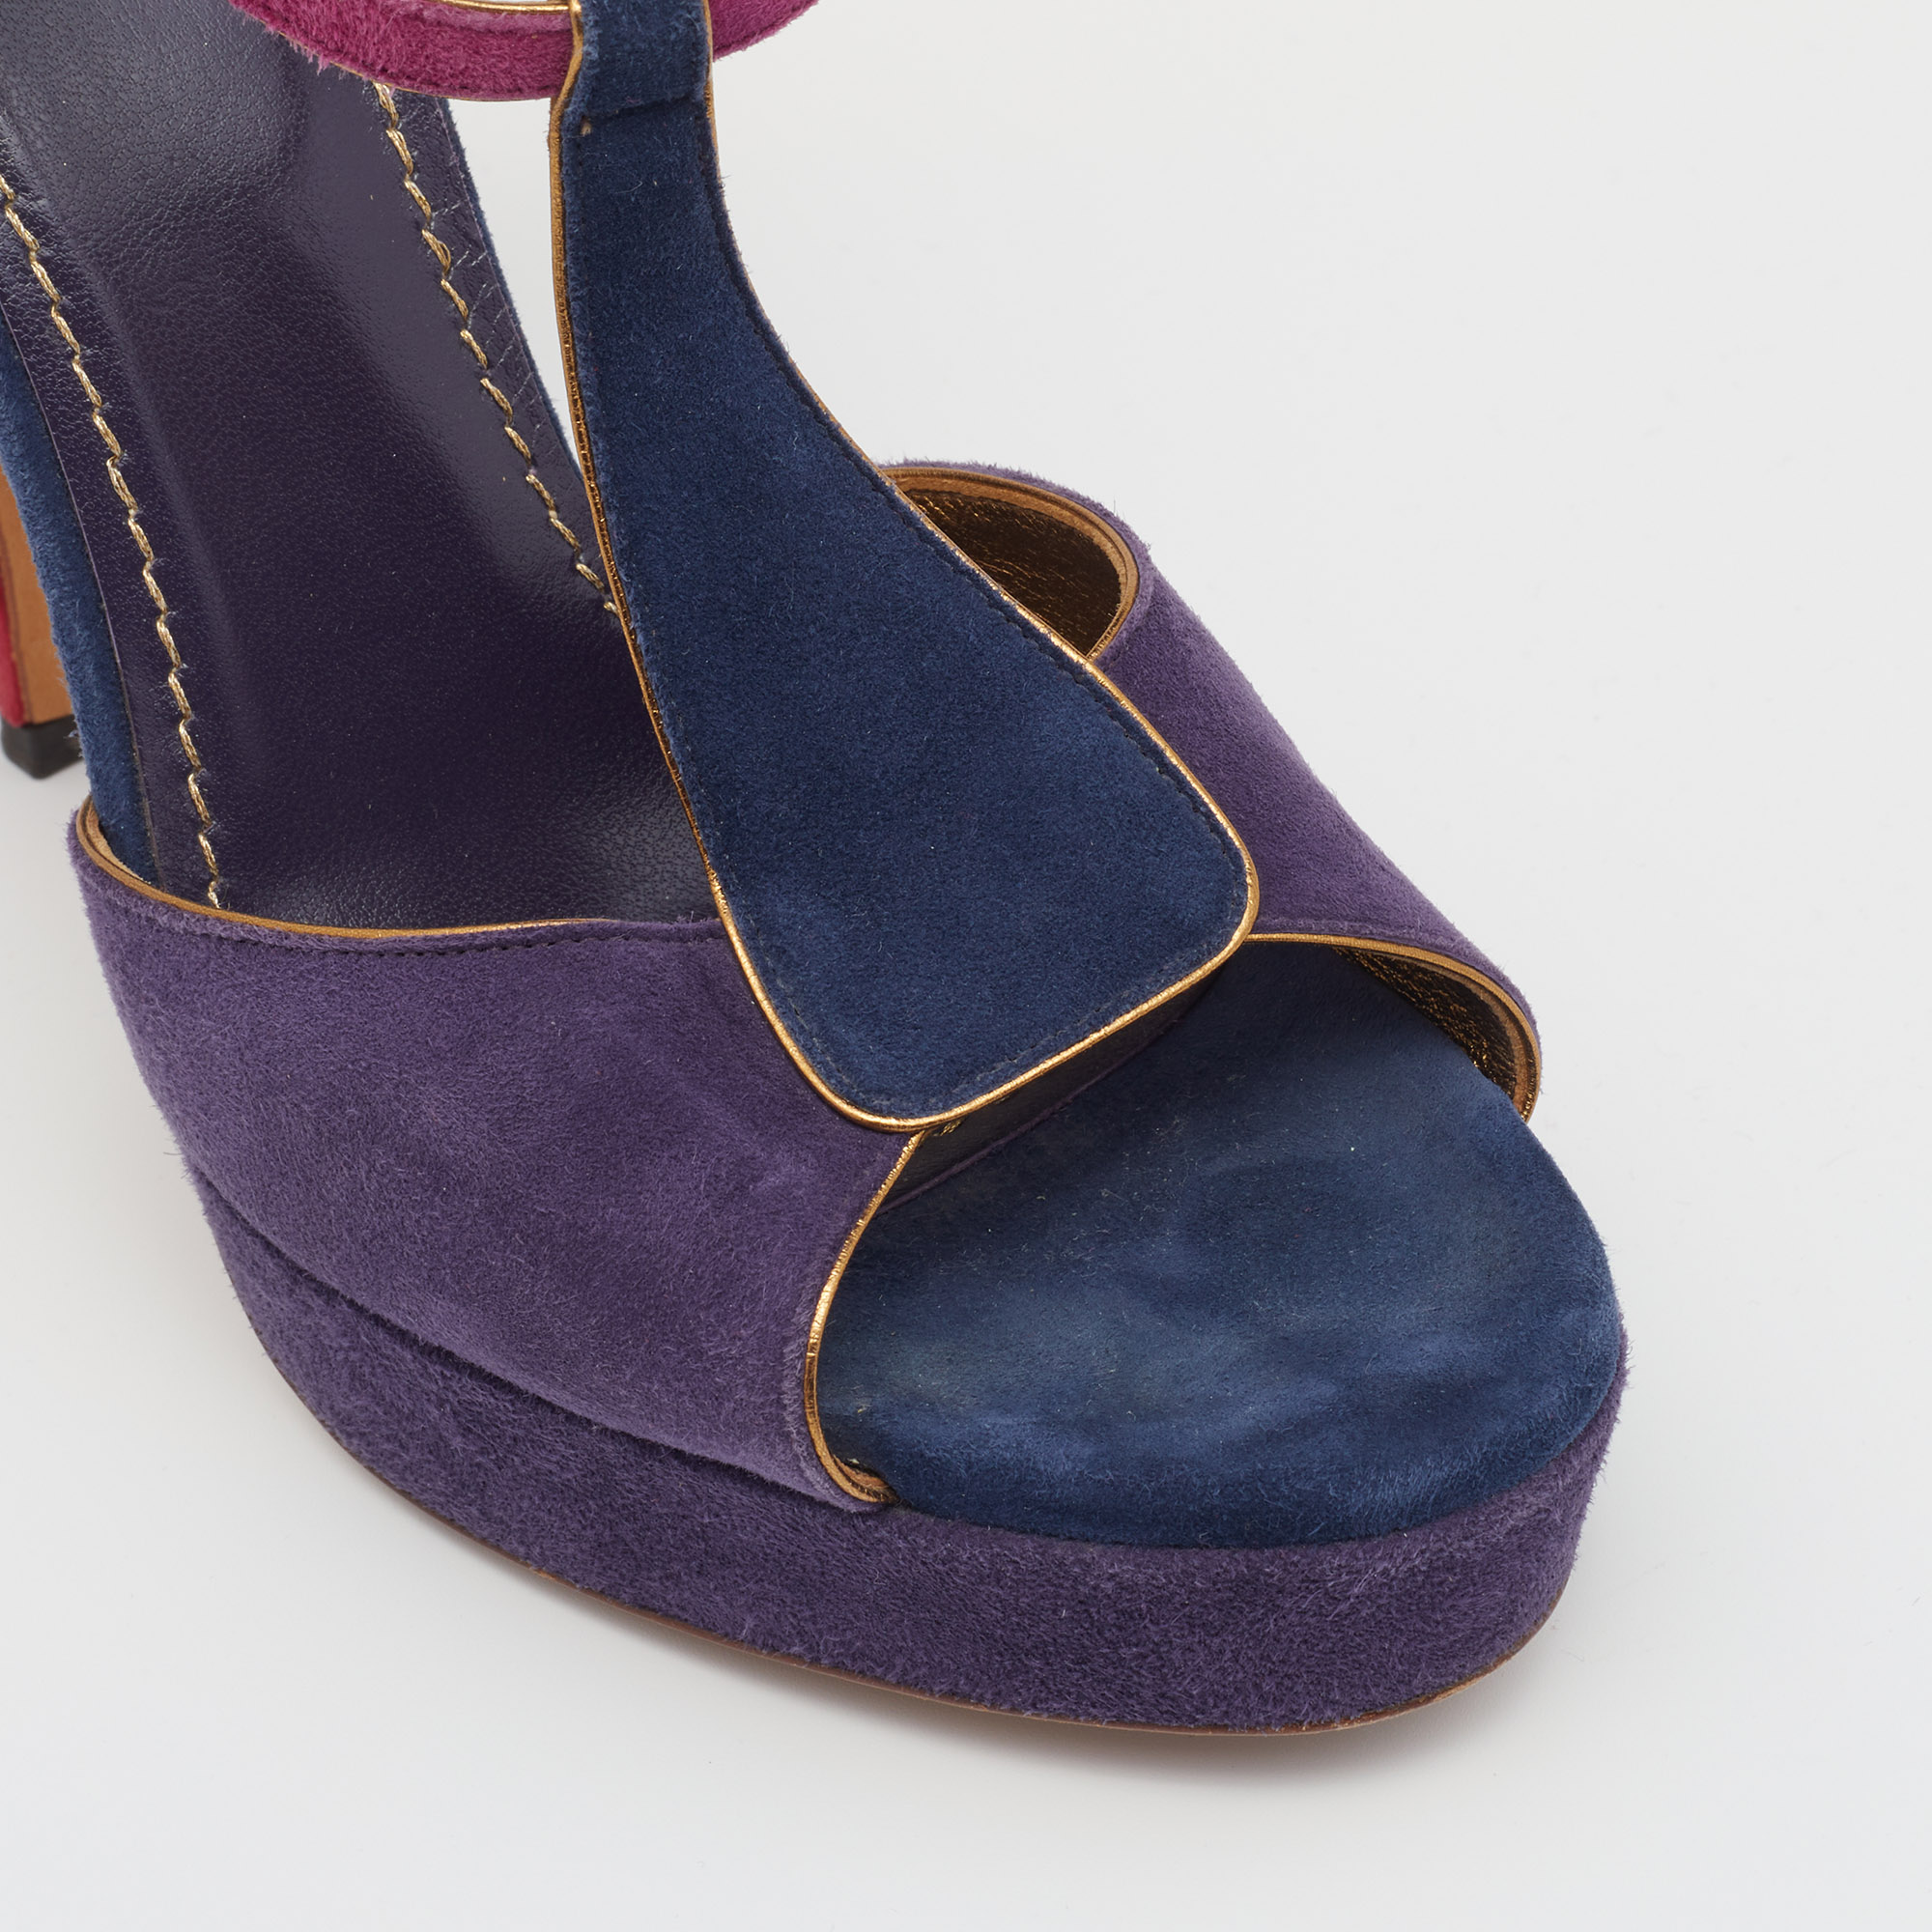 Yves Saint Laurent Multicolor Suede Slingback Platform Sandals Size 39.5